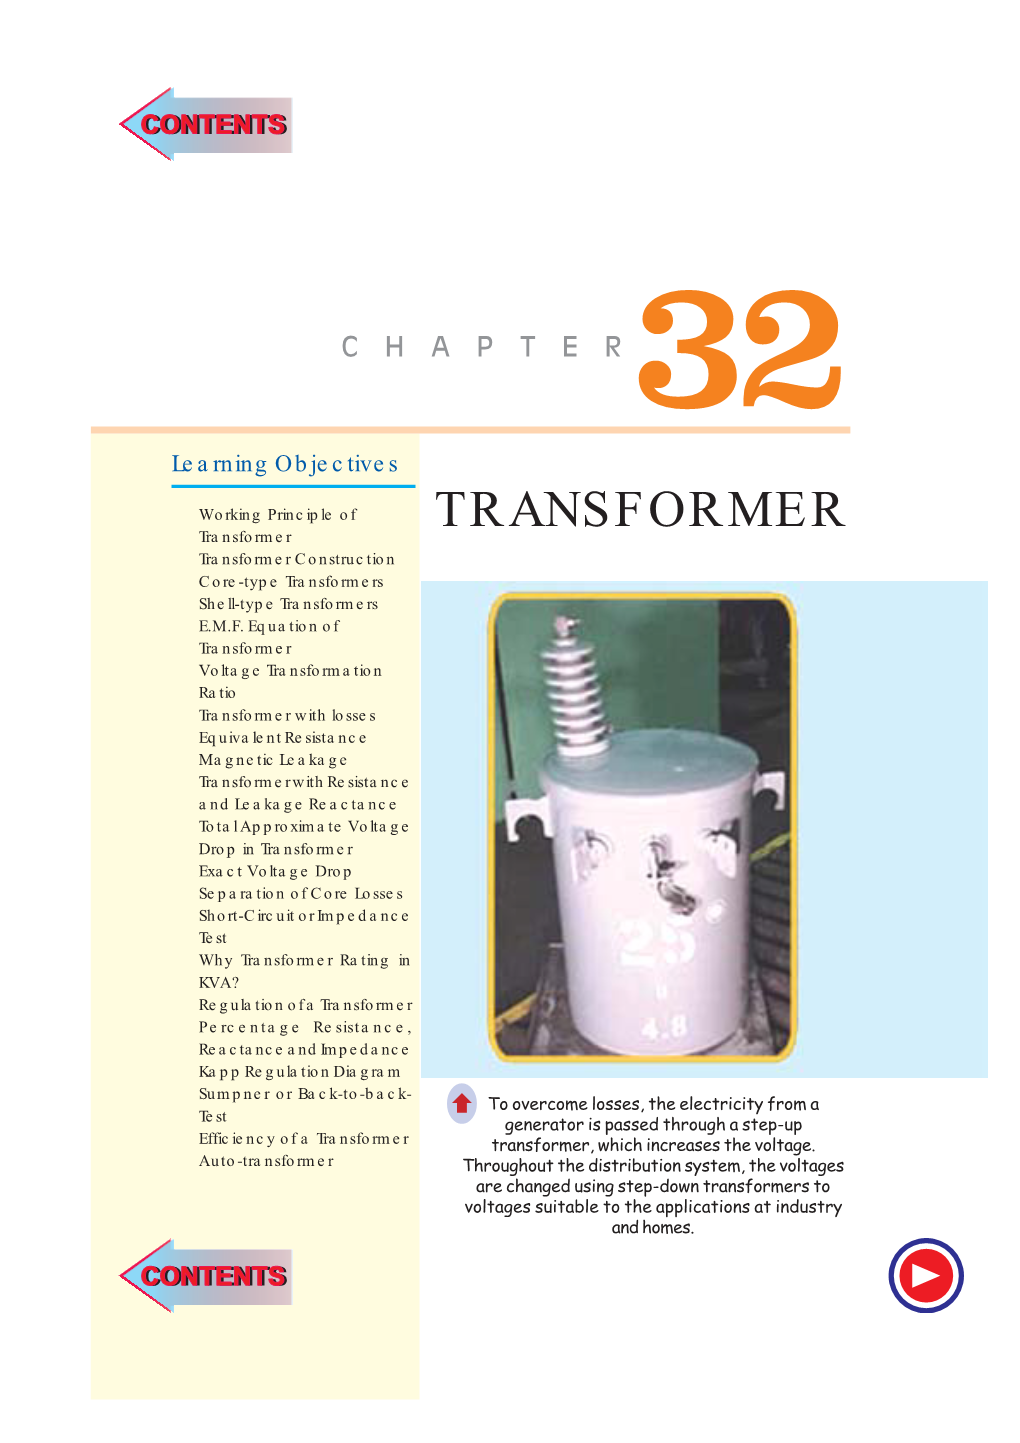 TRANSFORMER Transformer ➣ Transformer Construction ➣ Core-Type Transformers ➣ Shell-Type Transformers ➣ E.M.F